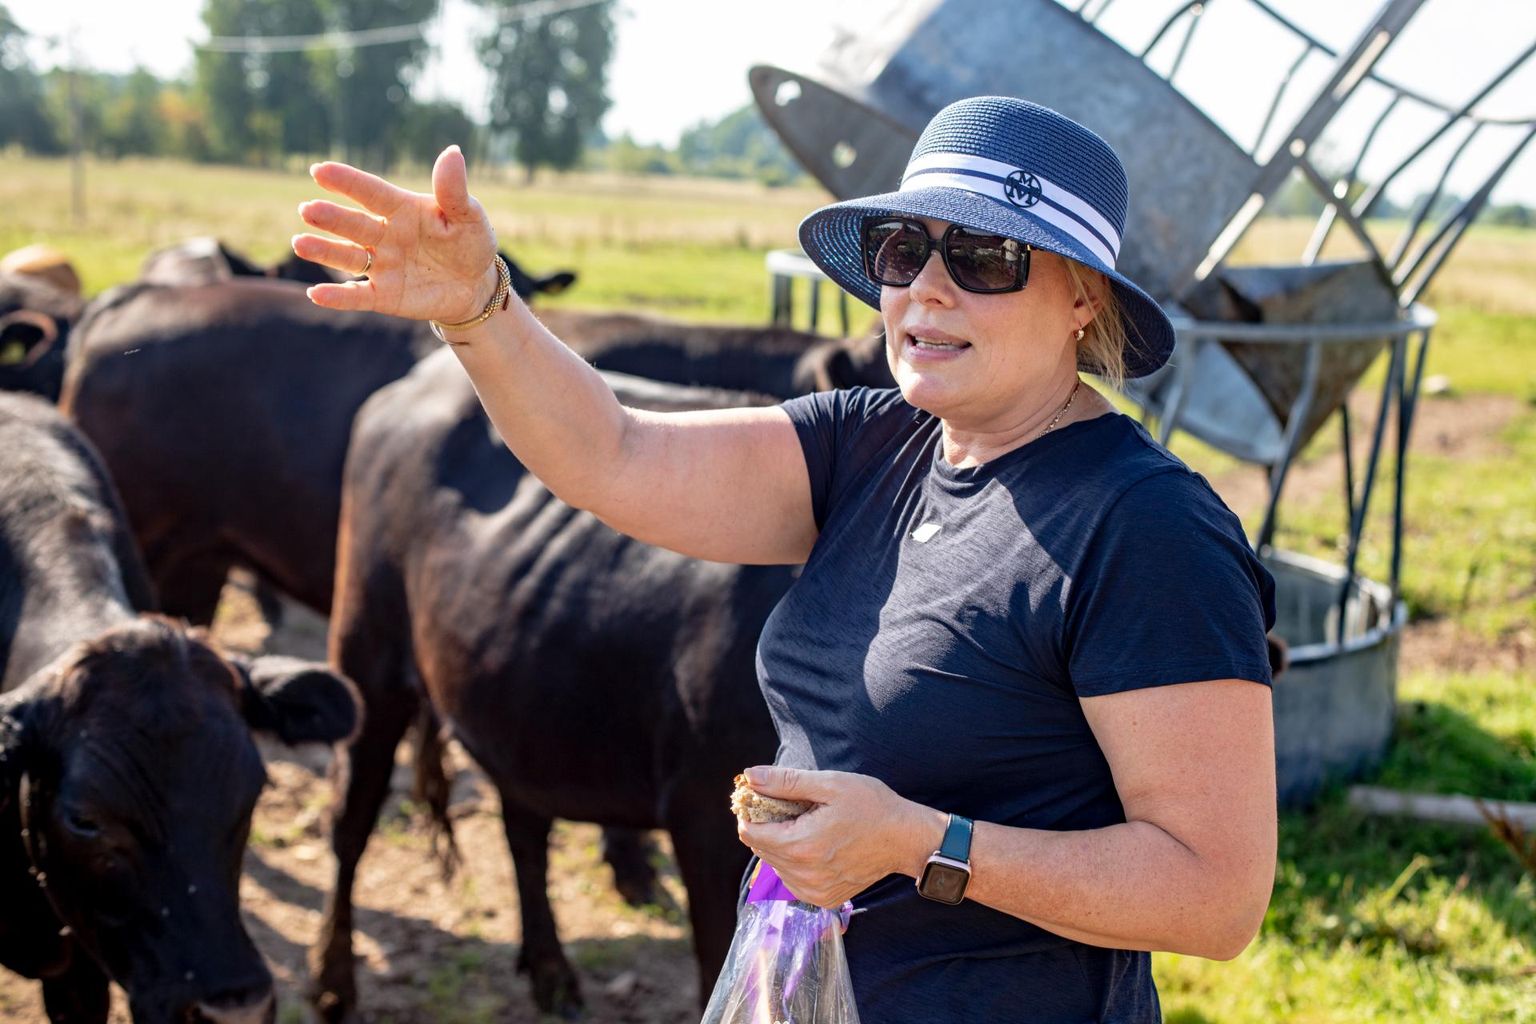 Miks portsjonkarjatamine pole Eestis levinud, põhjendab Katrin Noorkõiv, et see on uuem teema taastuvast põllumajandusest, millest veel vähe räägitakse.

 